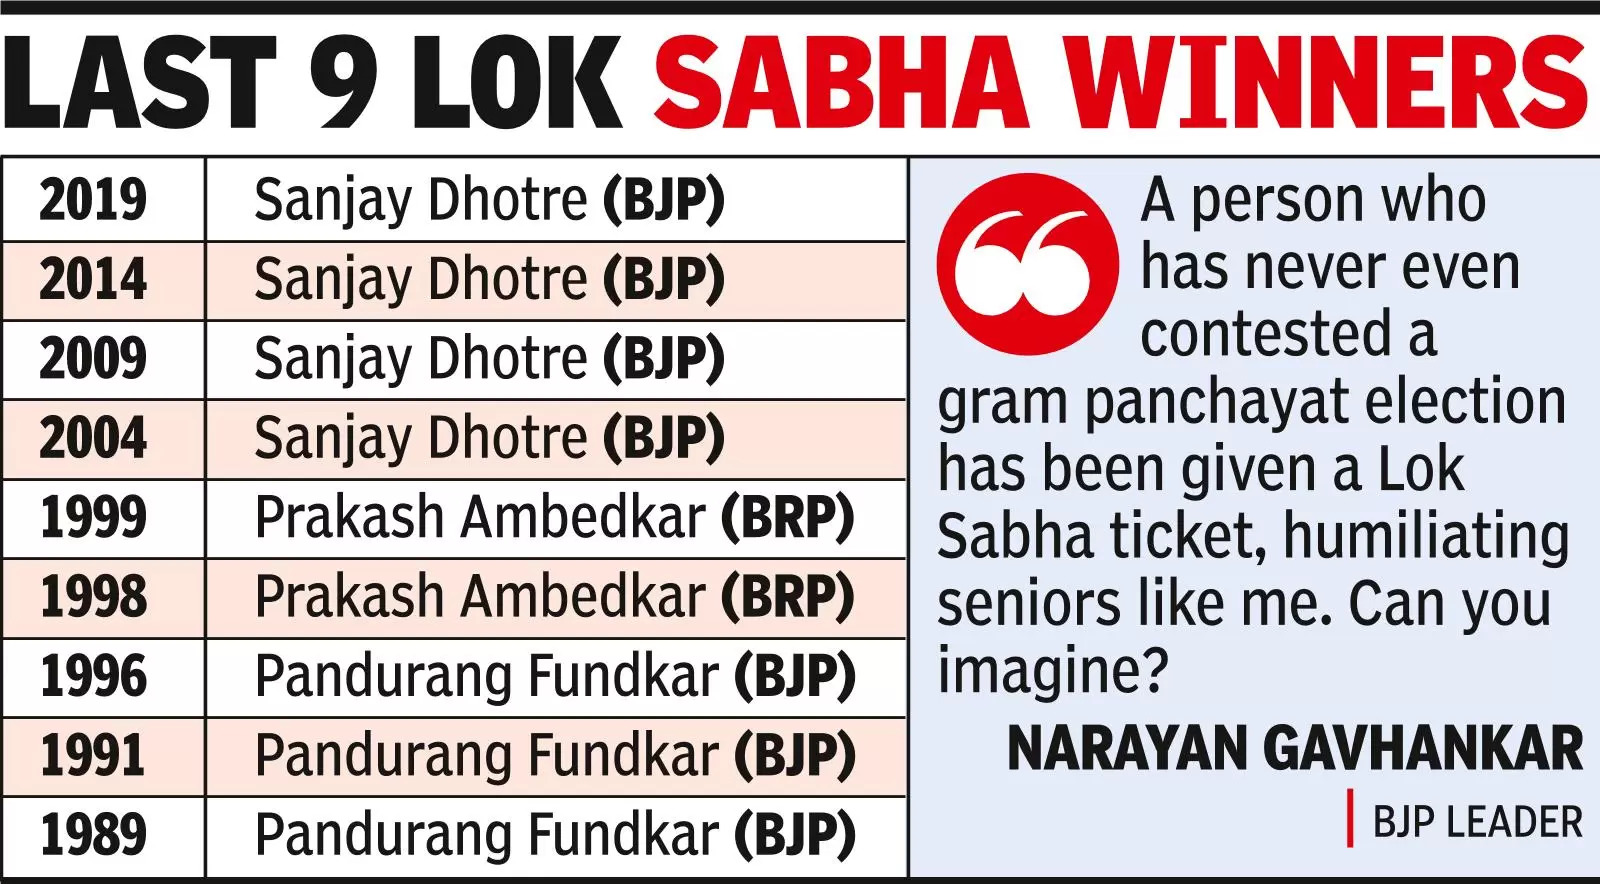 Gavhankar’s rebellion poses challenge to BJP